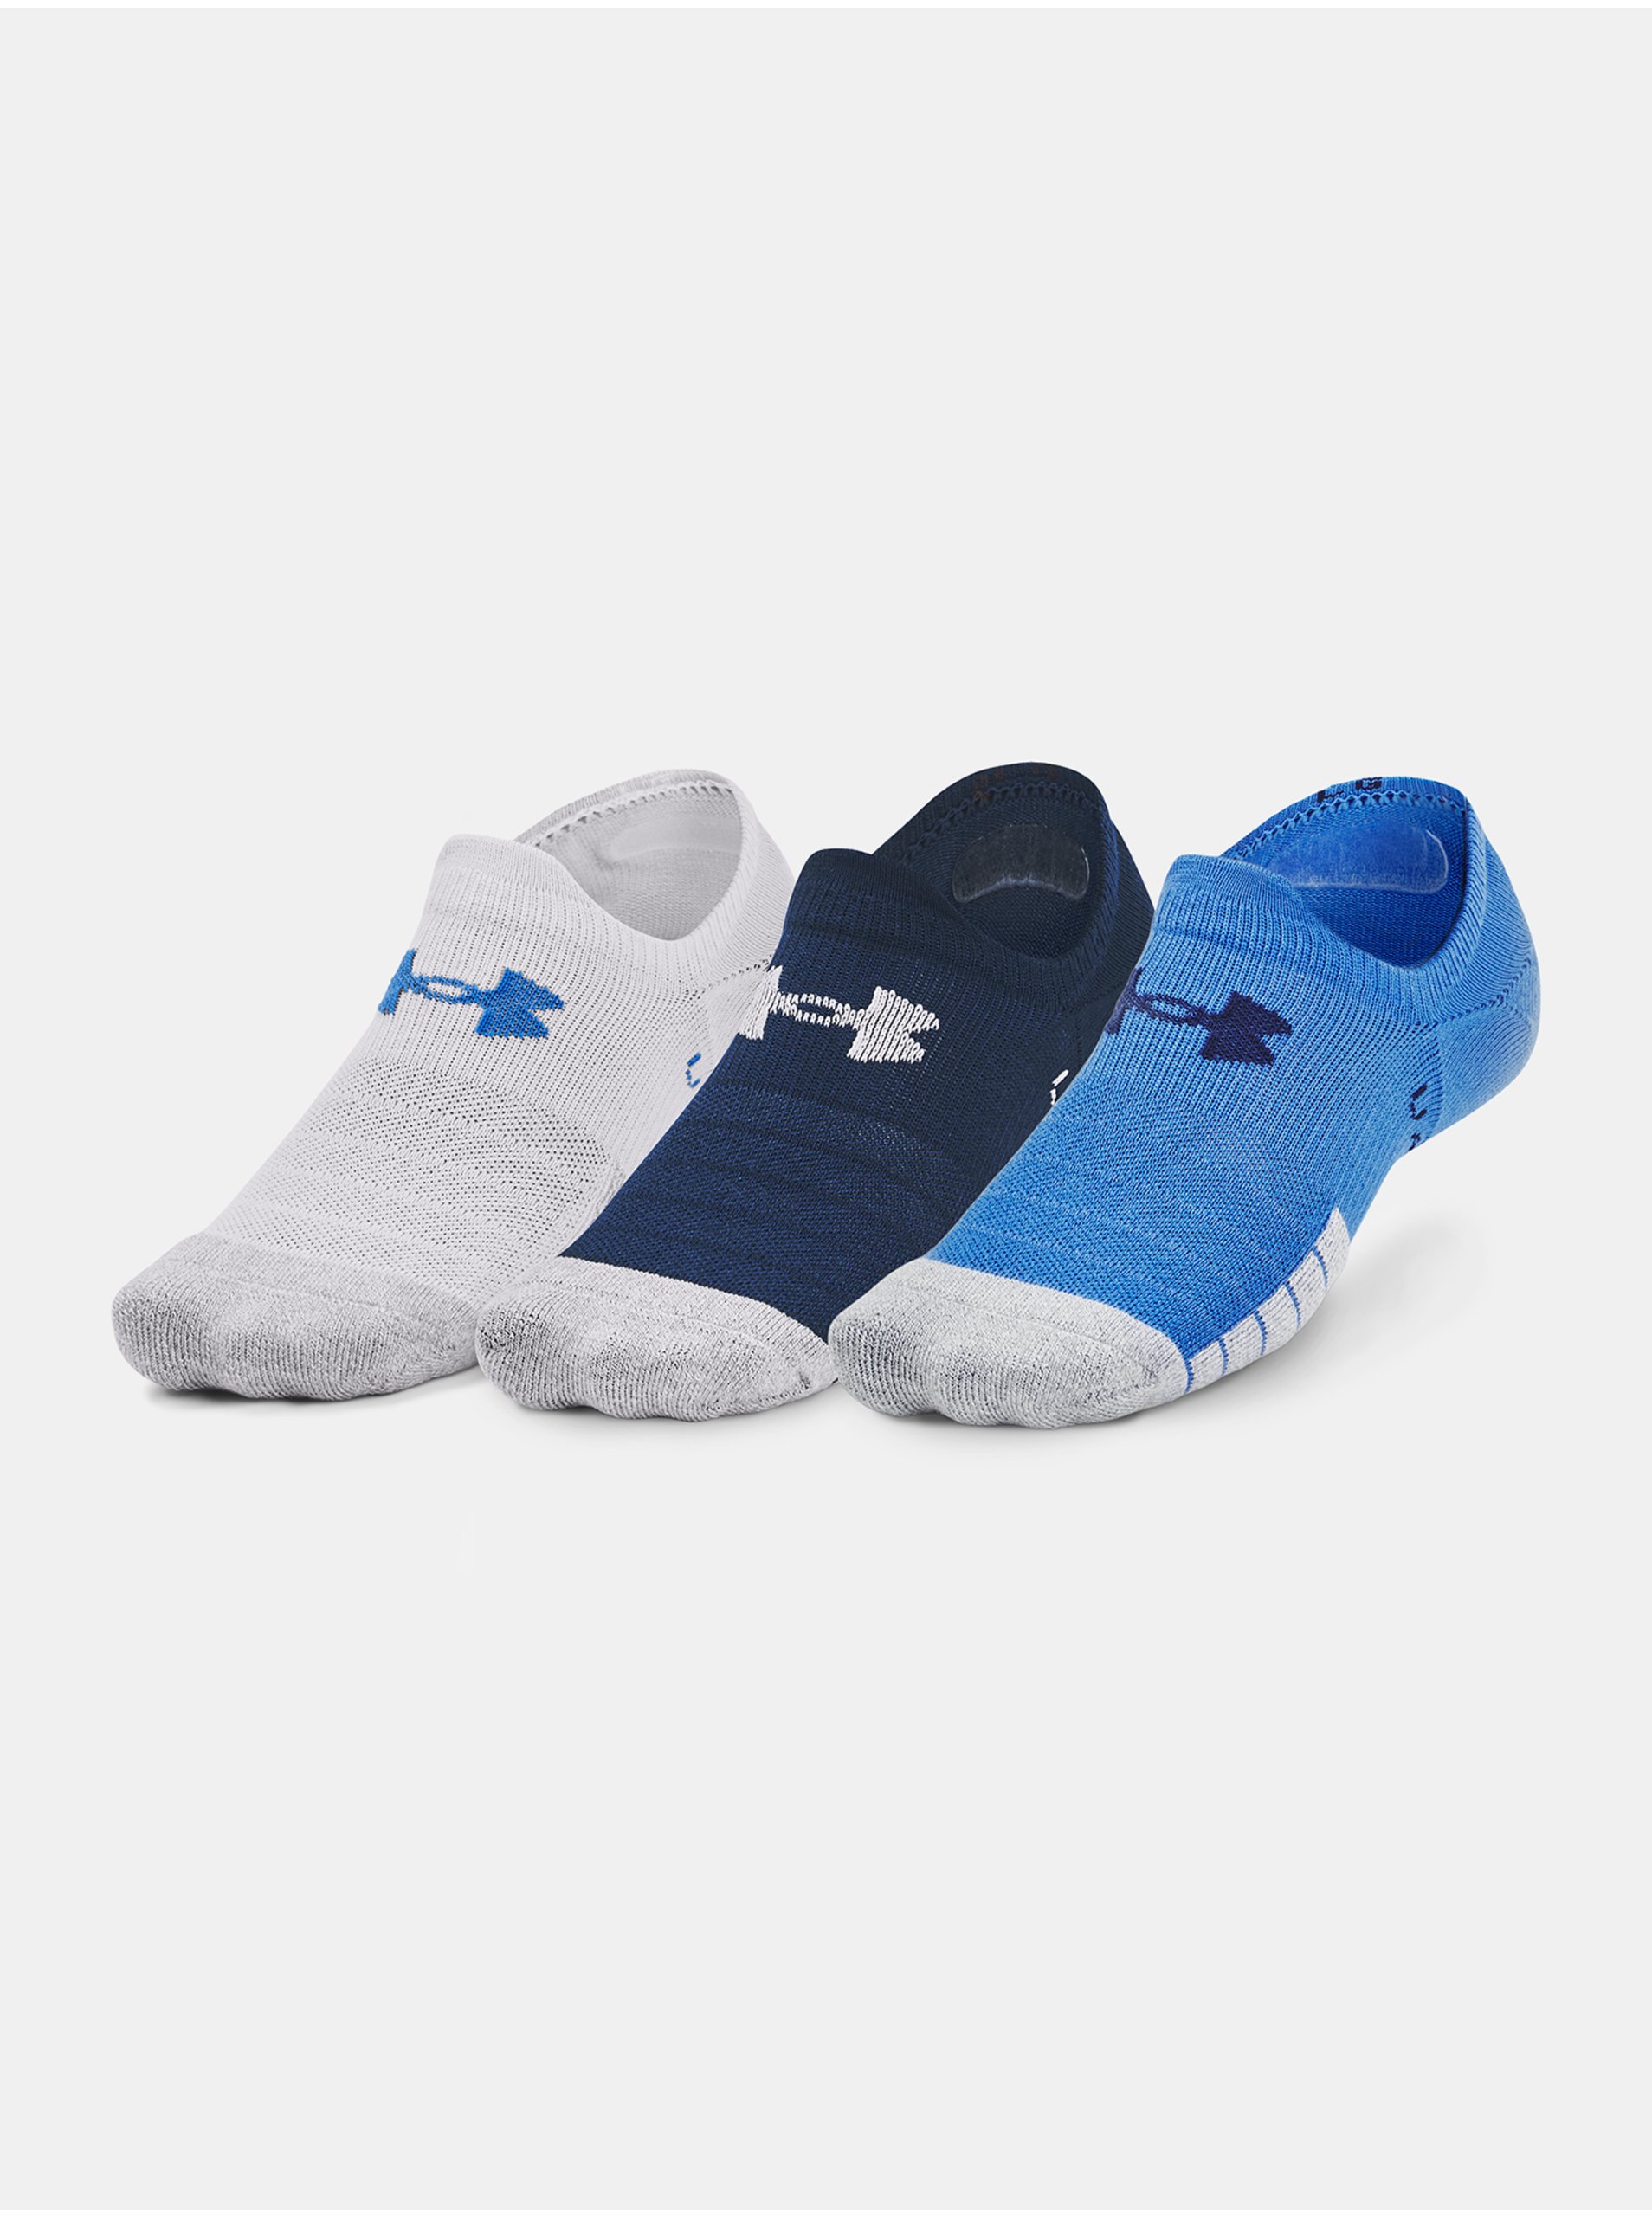 Lacno Sada troch párov športových ponožiek v bielej, tmavomodrej a modrej farbe Under Armour Heatgear